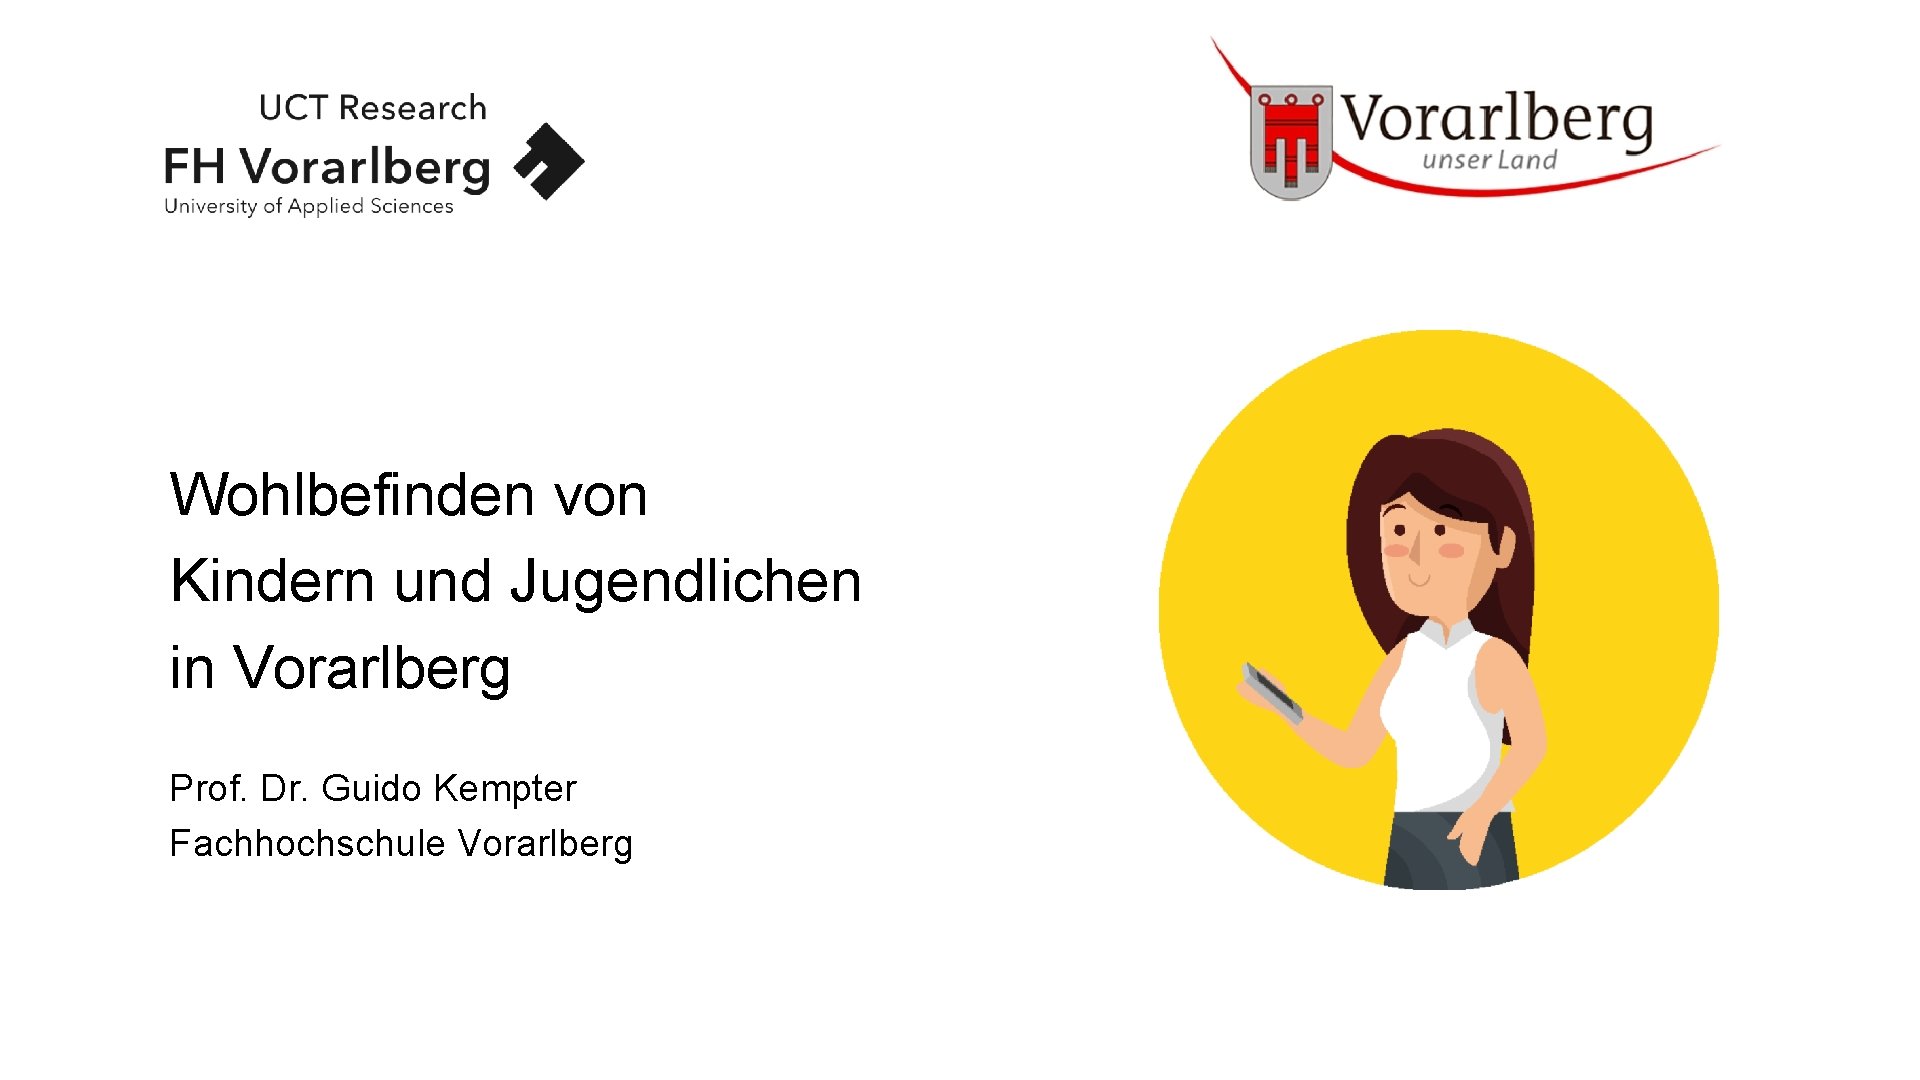 Wohlbefinden von Kindern und Jugendlichen in Vorarlberg Prof. Dr. Guido Kempter Fachhochschule Vorarlberg 